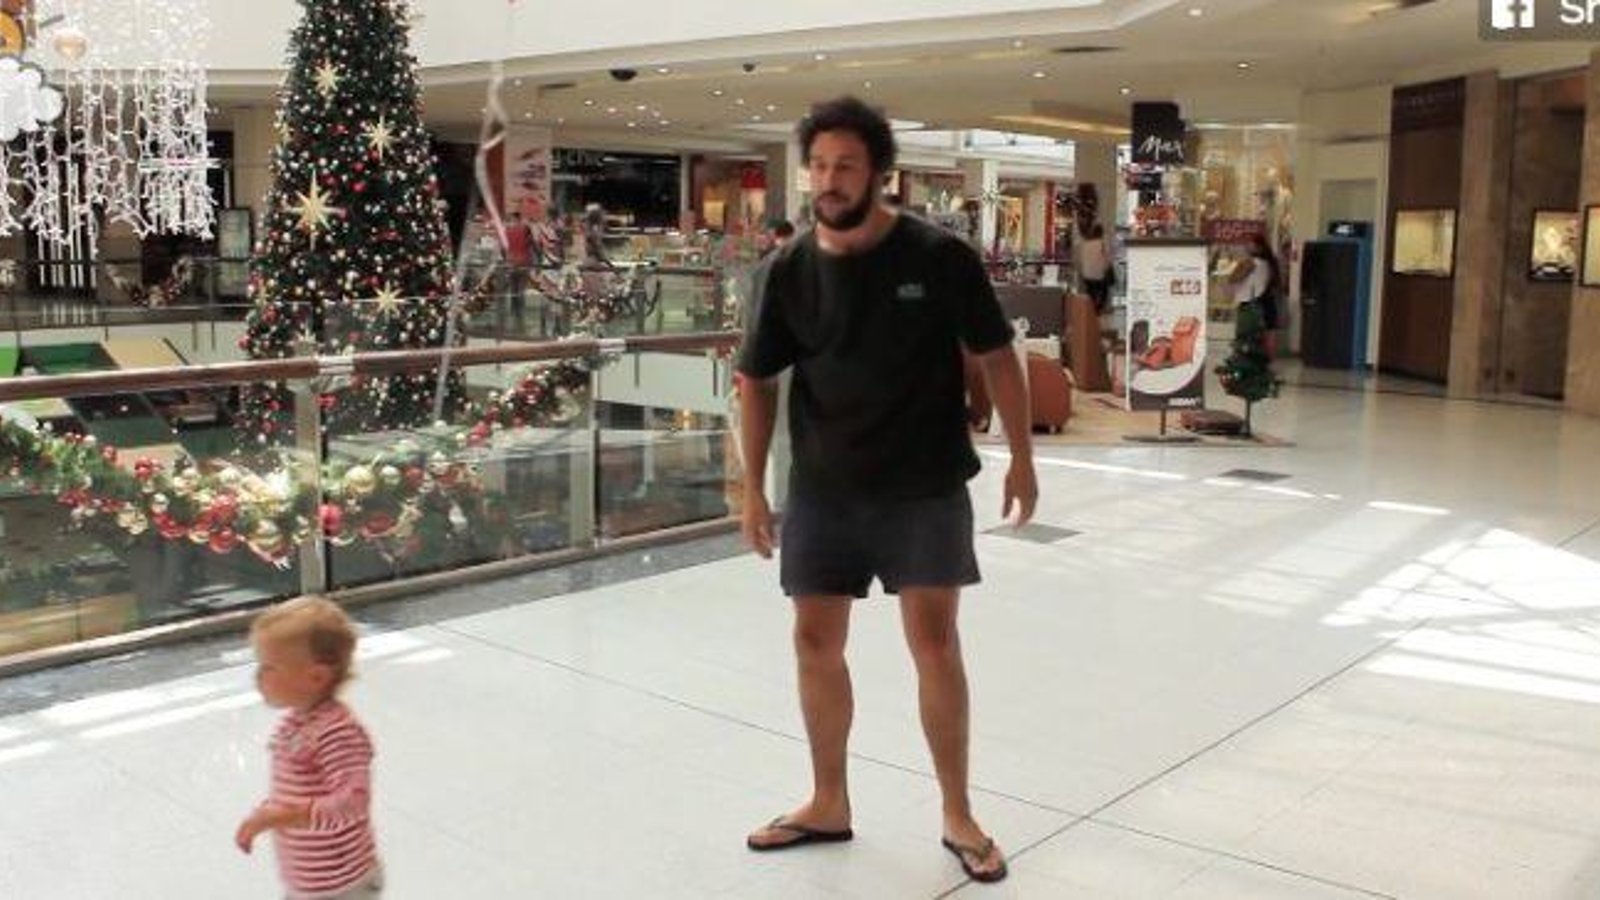 Ce père a trouvé une astuce géniale pour surveiller son enfant dans les lieux publics!!!